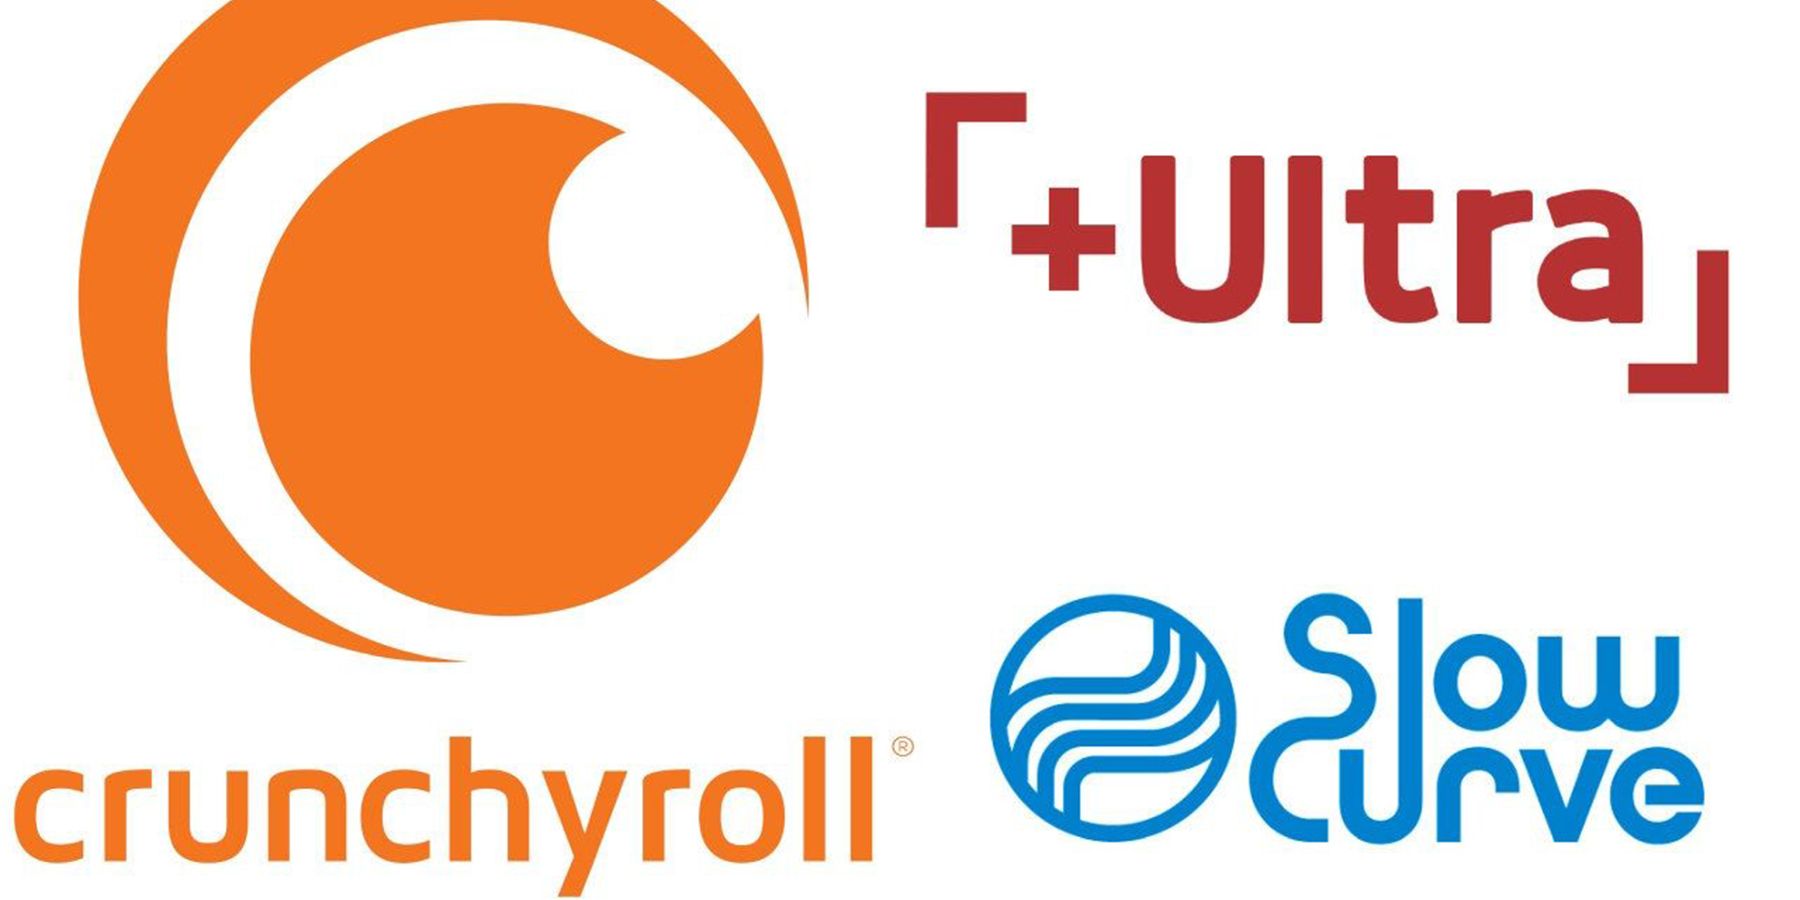 Crunchyroll und Fuji TV geben Partnerschaft bekannt, von der Anime-Fans profitieren